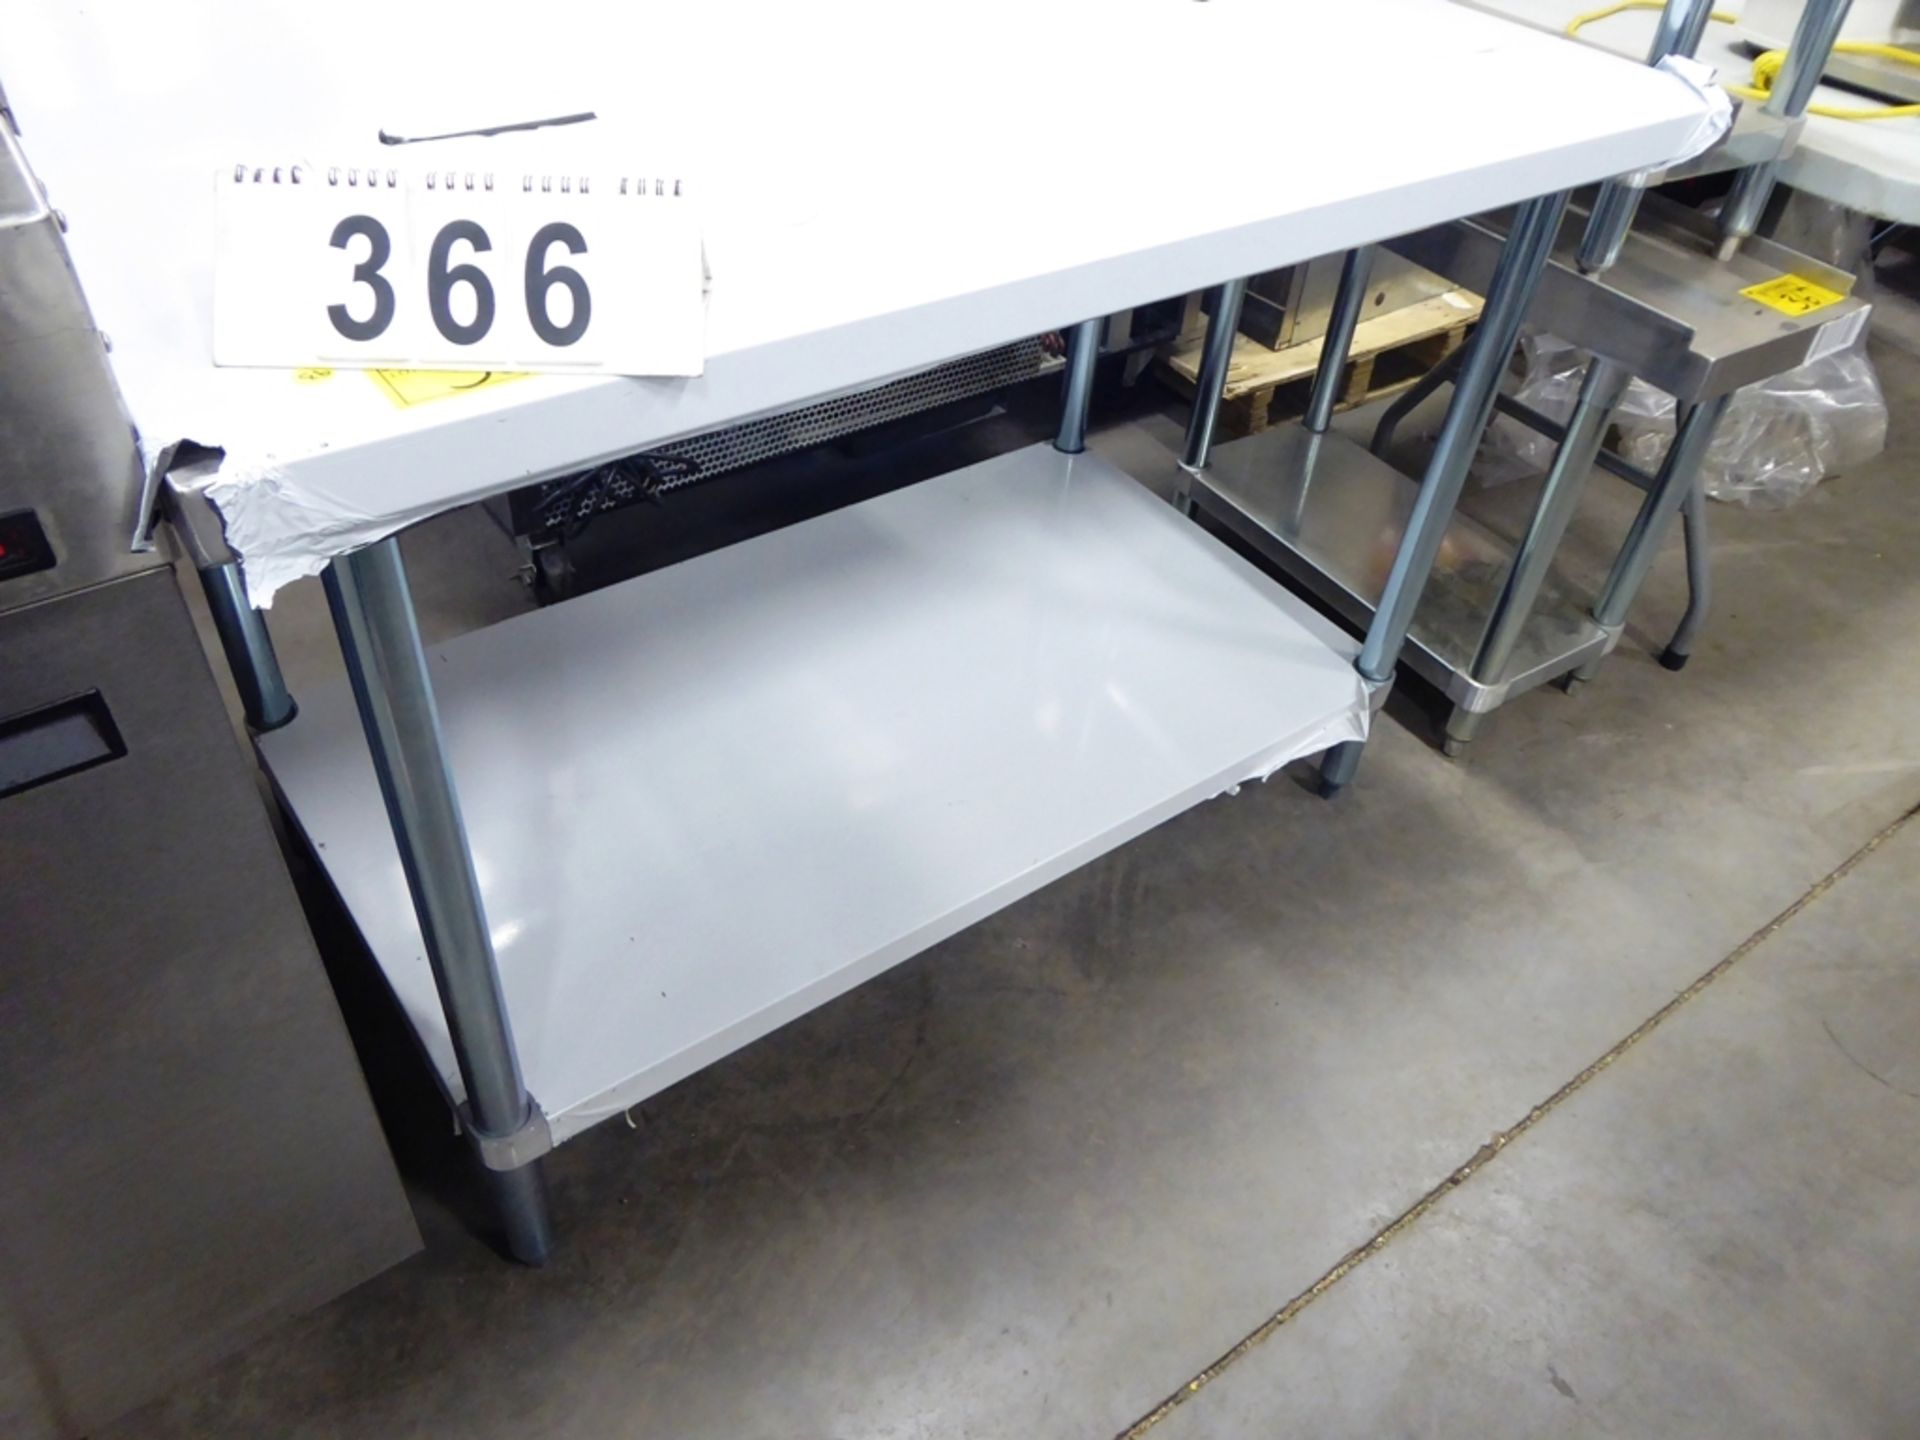 (NEW)THORINOX SS 30"X48" TABLE W/ UNDER SHELF